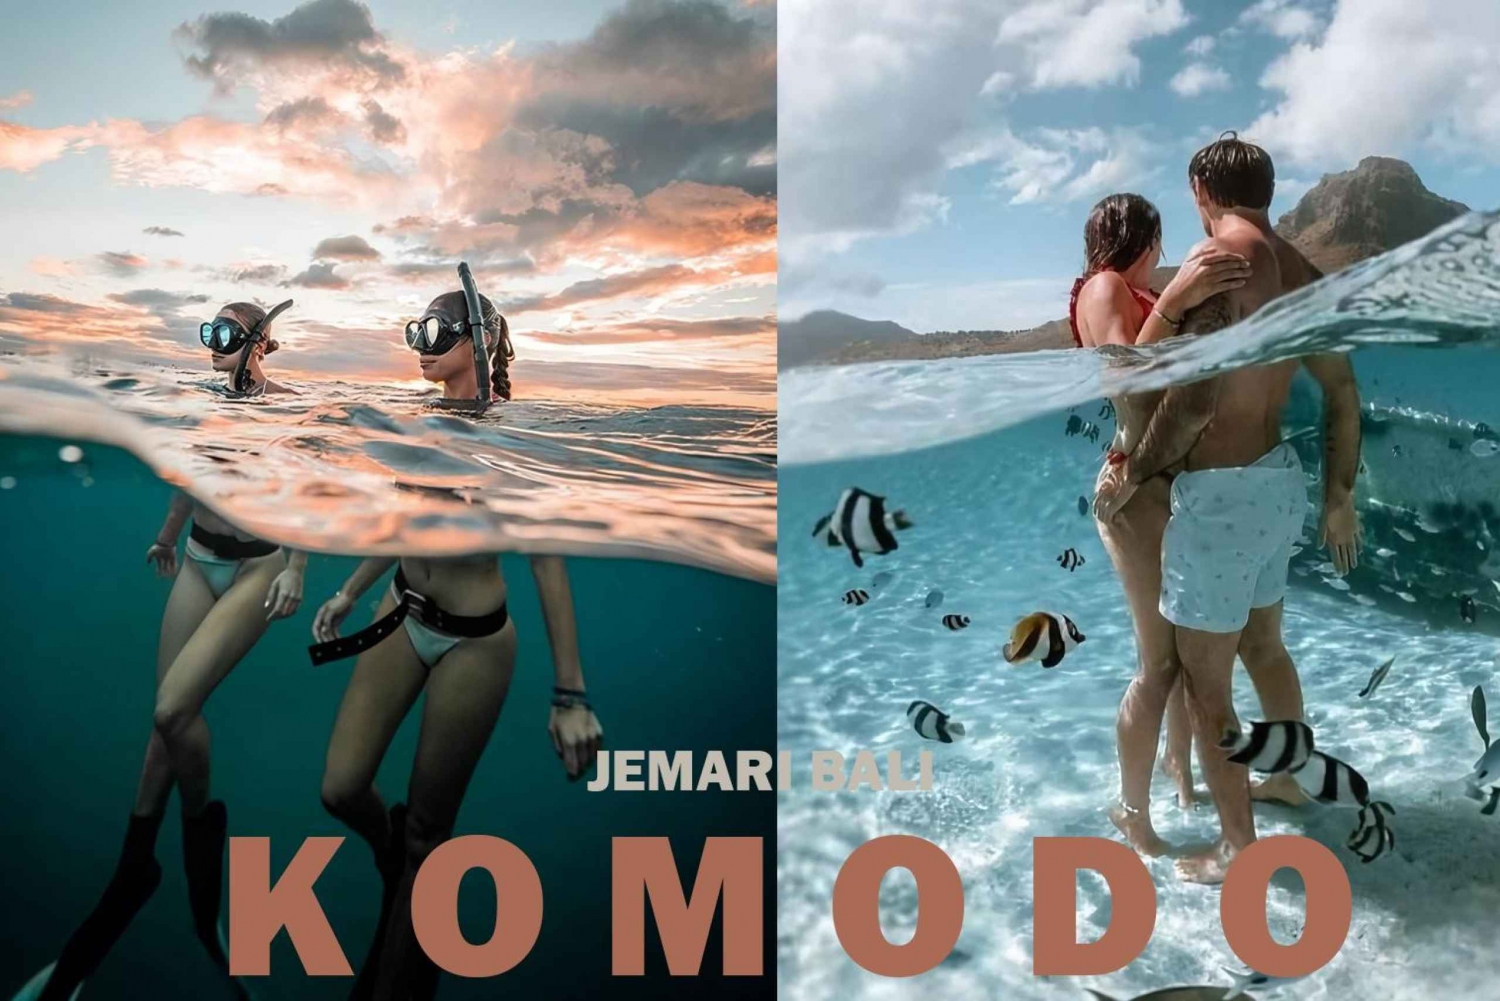 Excursão a Komodo: Tour particular de 4 dias com pernoite em barco e hotel